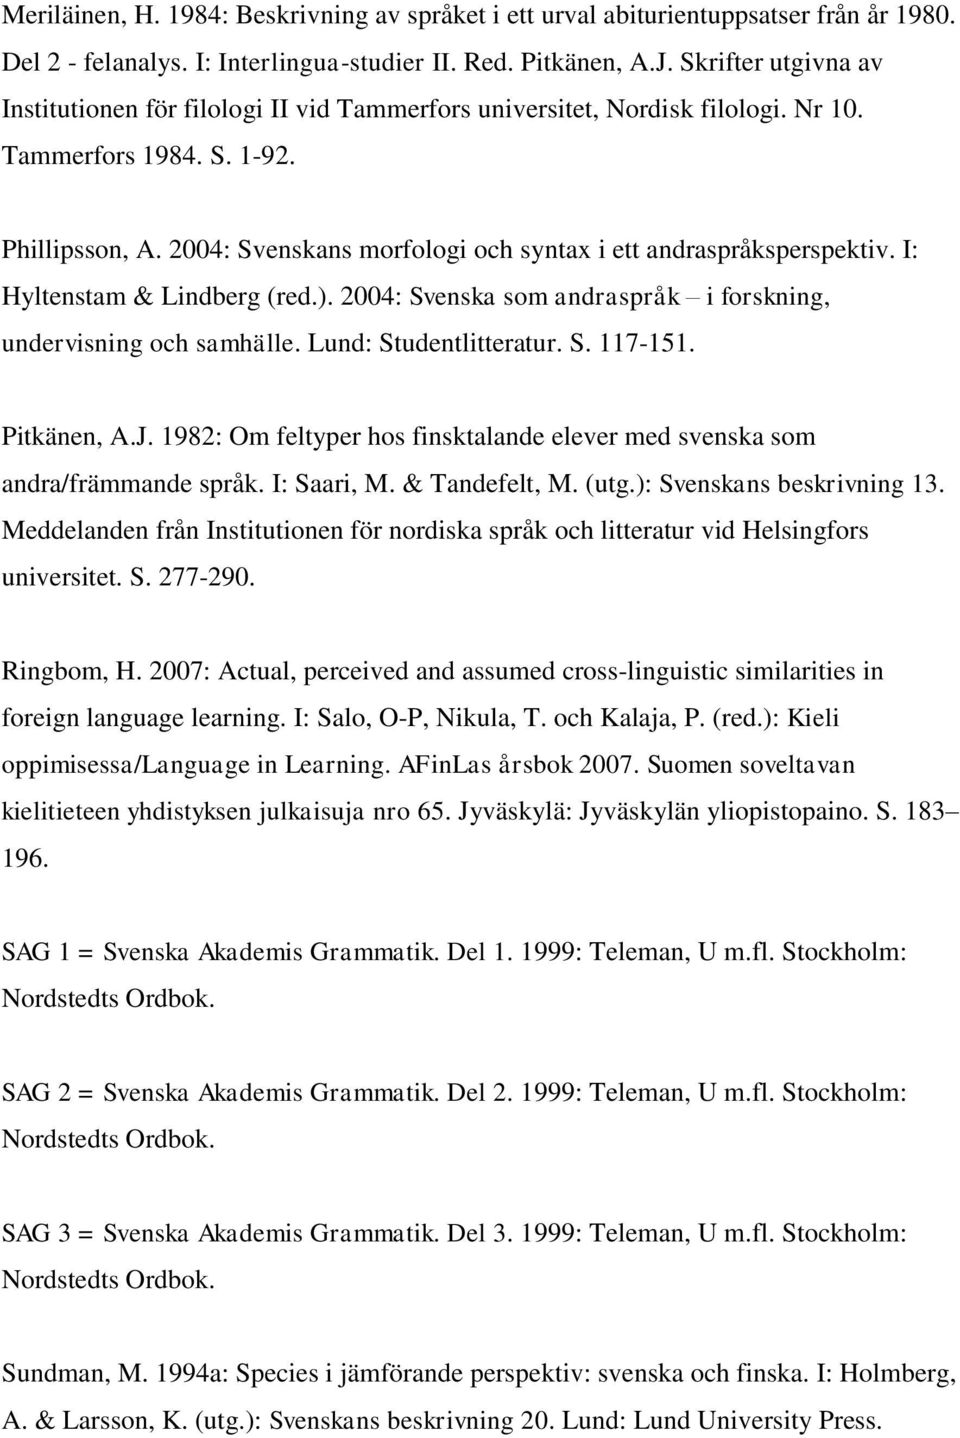 2004: Svenskans morfologi och syntax i ett andraspråksperspektiv. I: Hyltenstam & Lindberg (red.). 2004: Svenska som andraspråk i forskning, undervisning och samhälle. Lund: Studentlitteratur. S. 117-151.